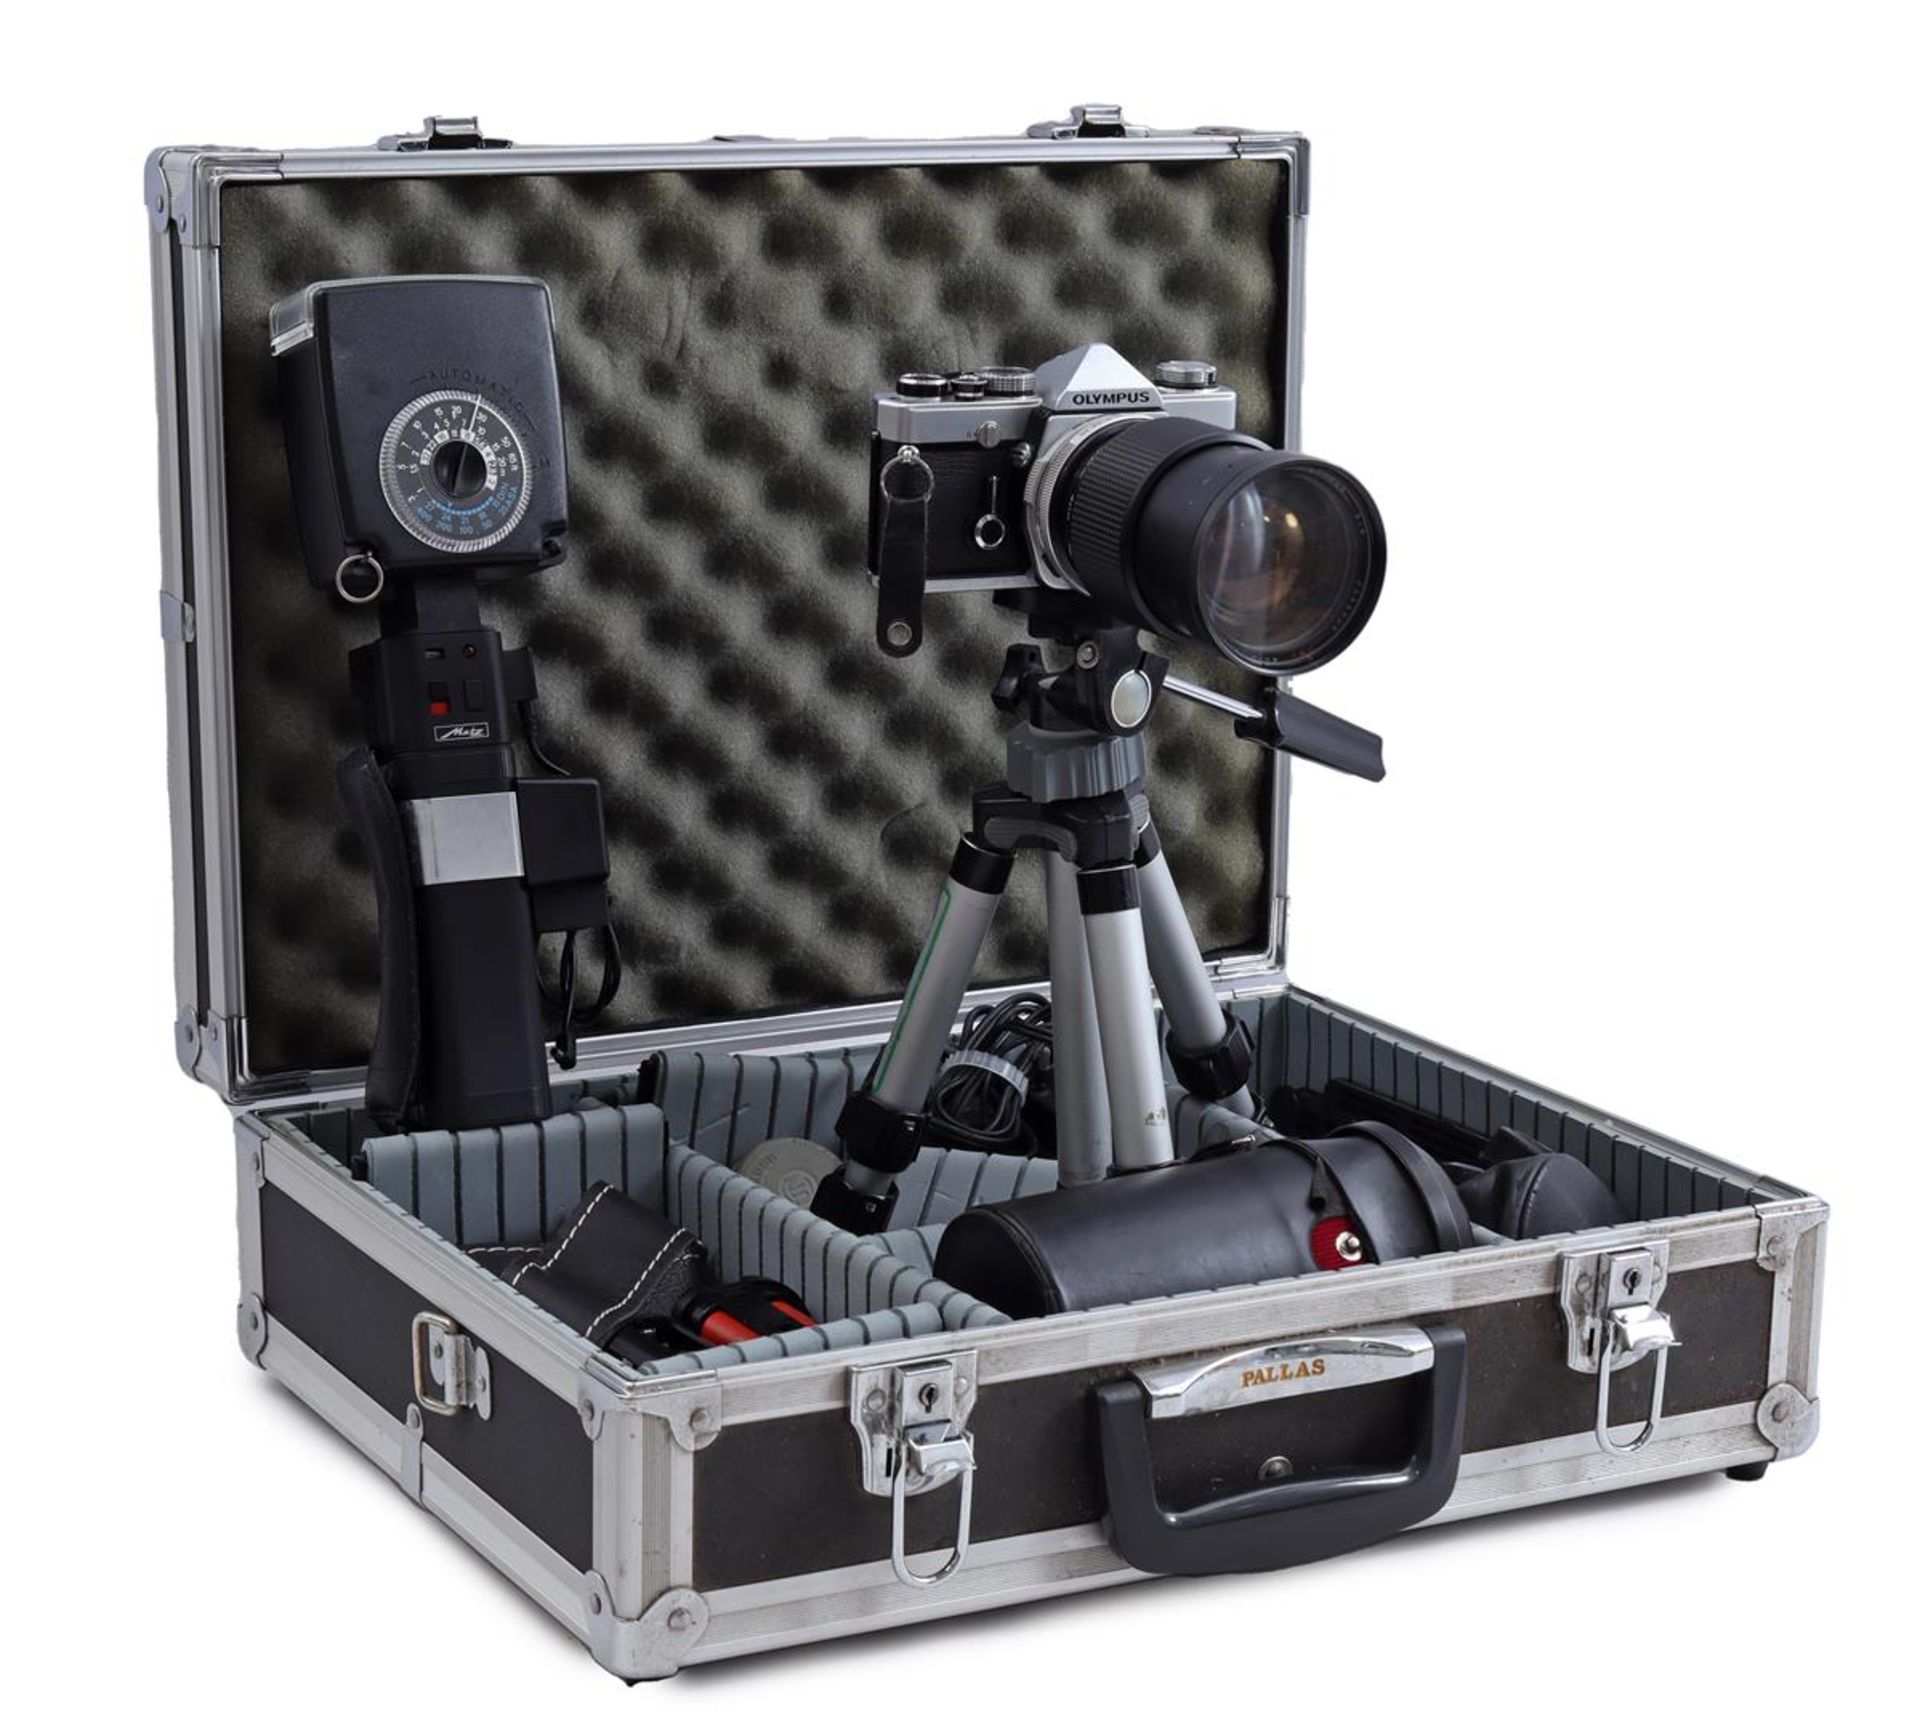 Olympus CM-1 camera in suitcase